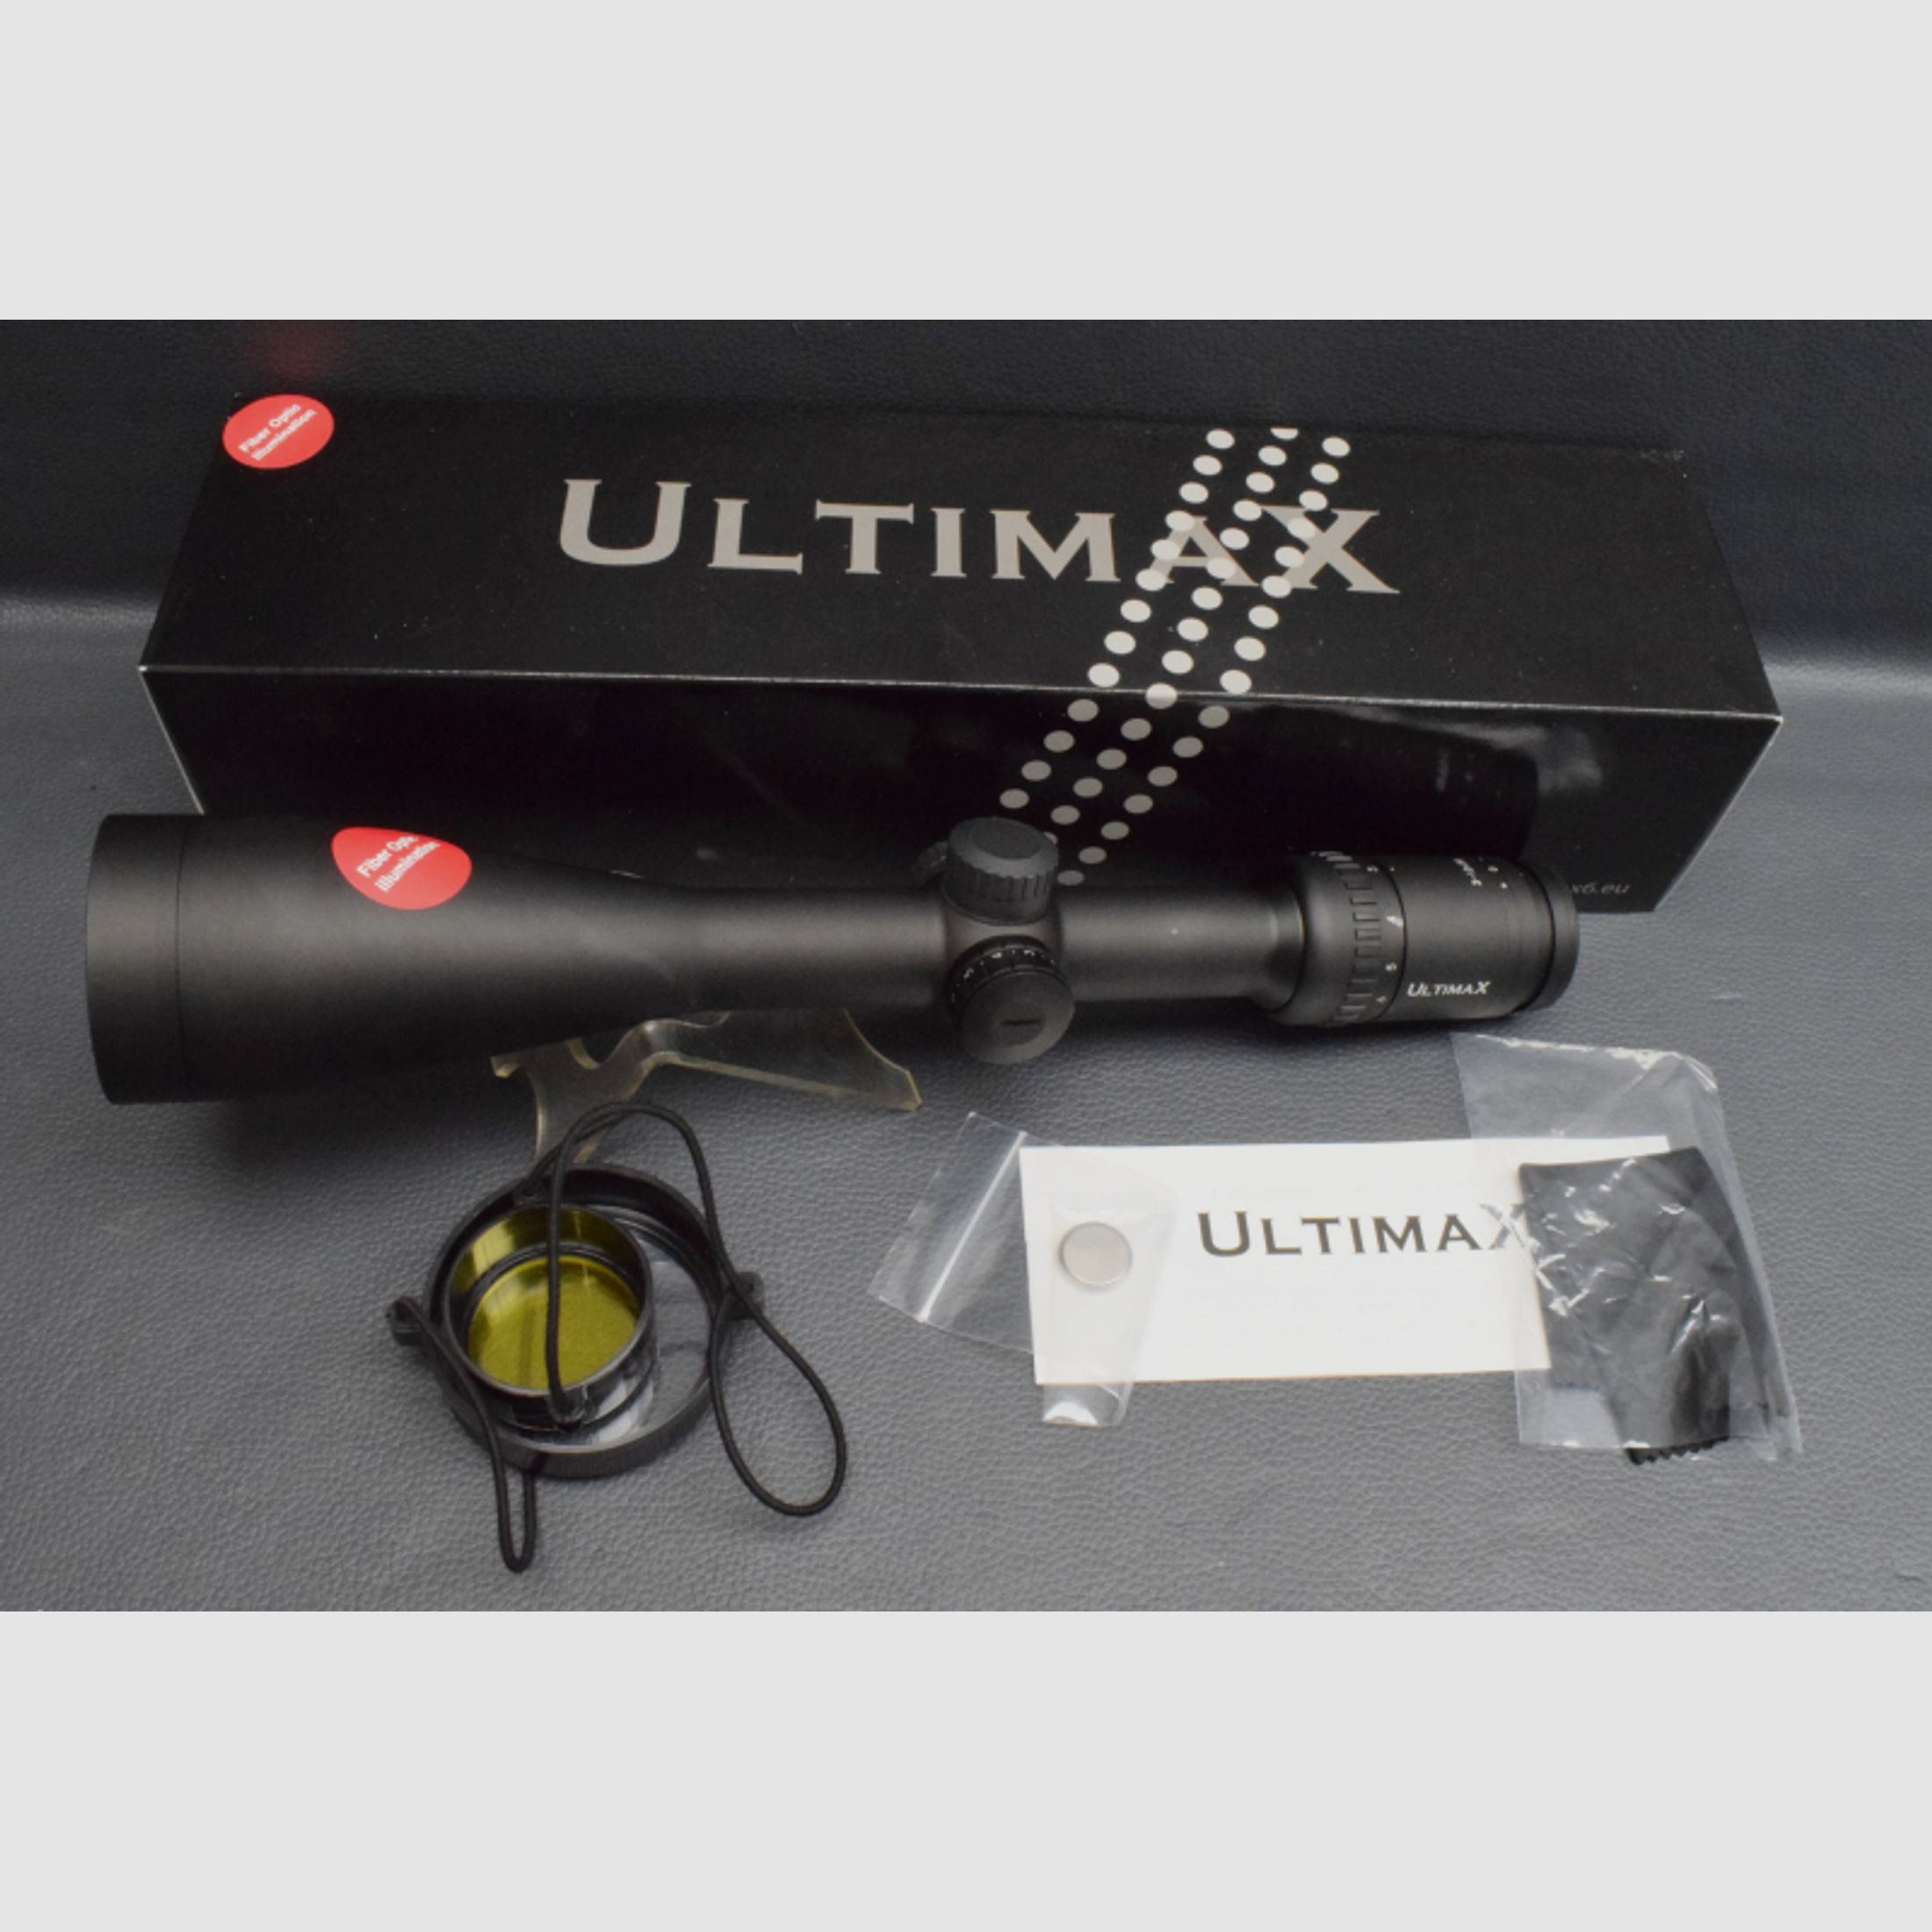 Ultimax Zielfernrohr 3-12x56 Absehen 4 LP, Neu aus Geschäftsauflösung